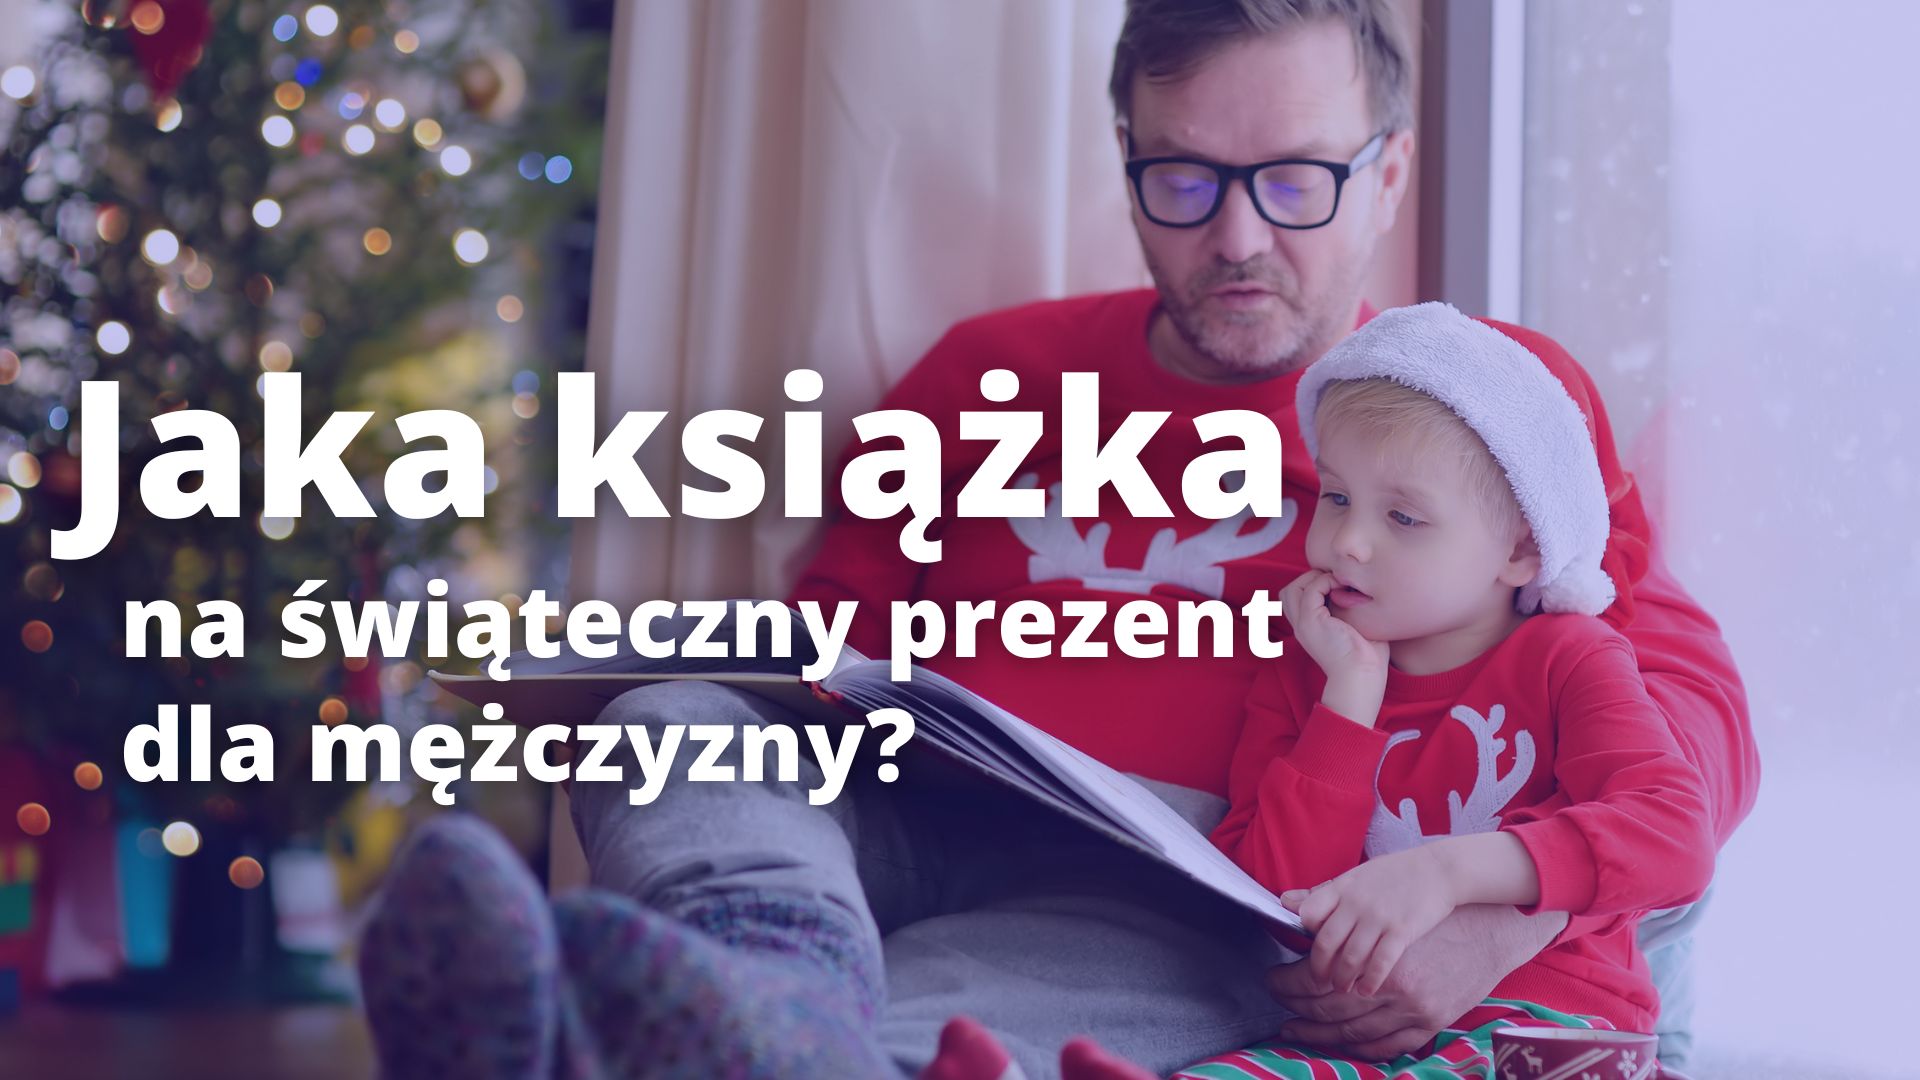 You are currently viewing Jak książka dla mężczyzny na świąteczny prezent?